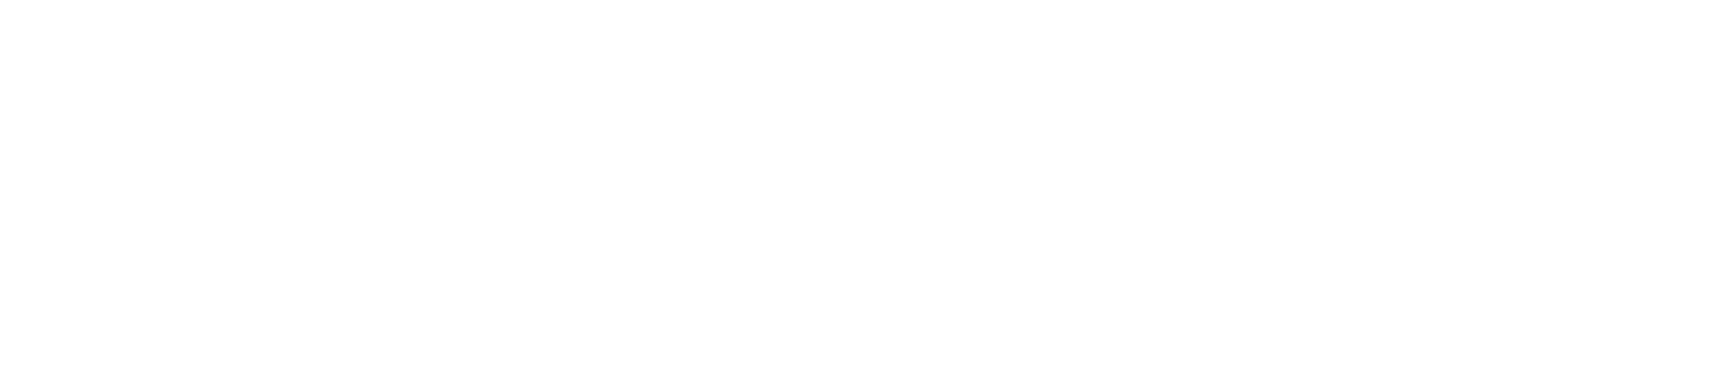 telco plus white logo